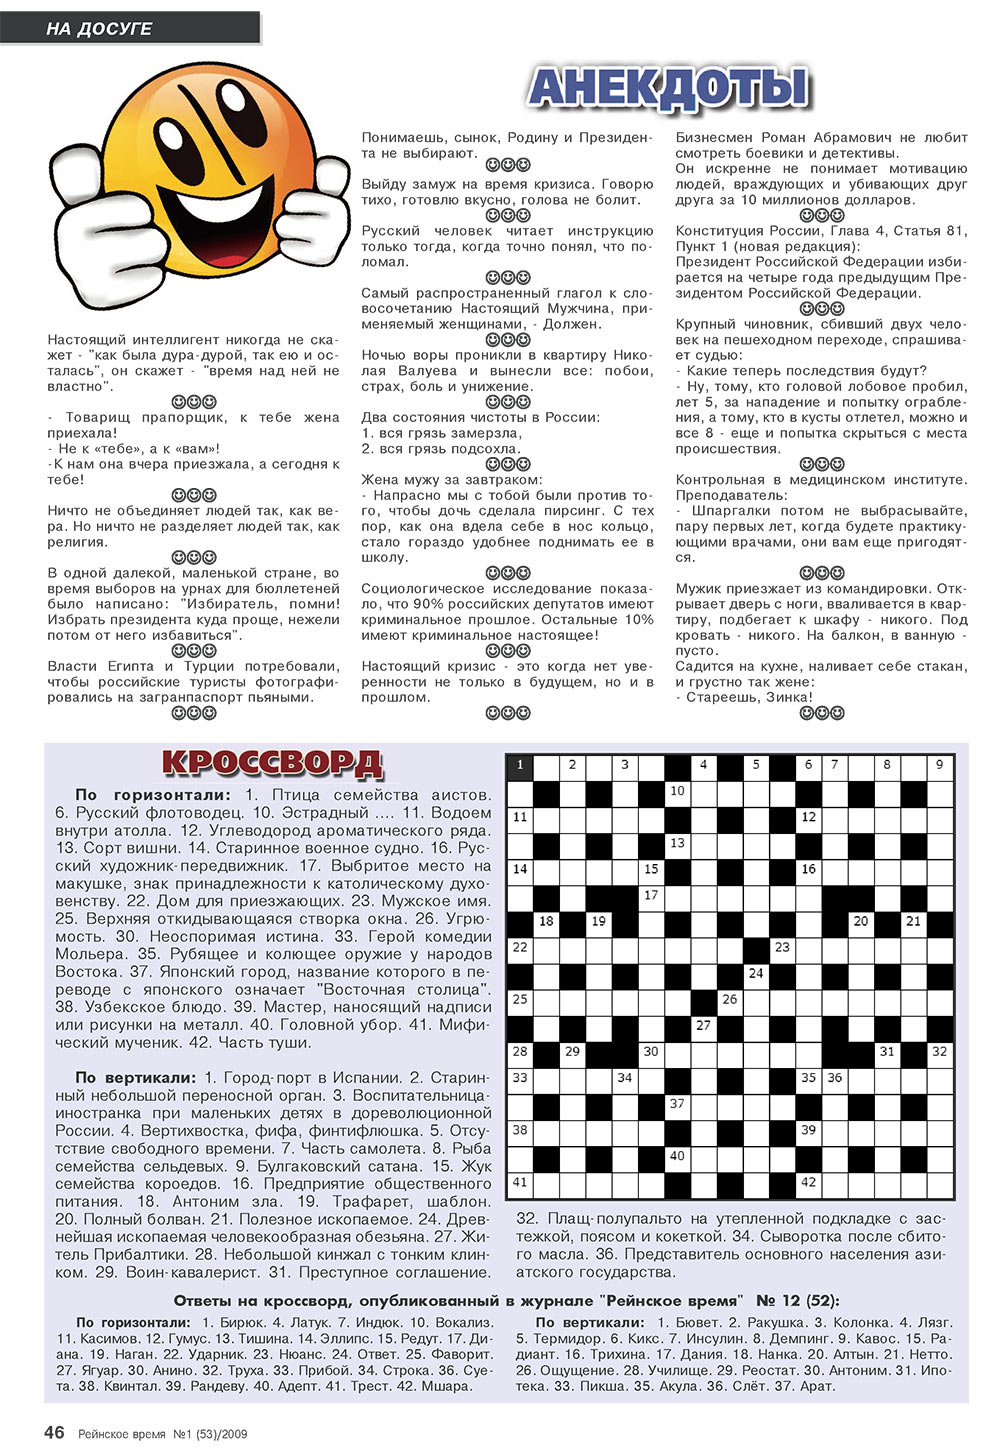 Рейнское время, журнал. 2009 №1 стр.46